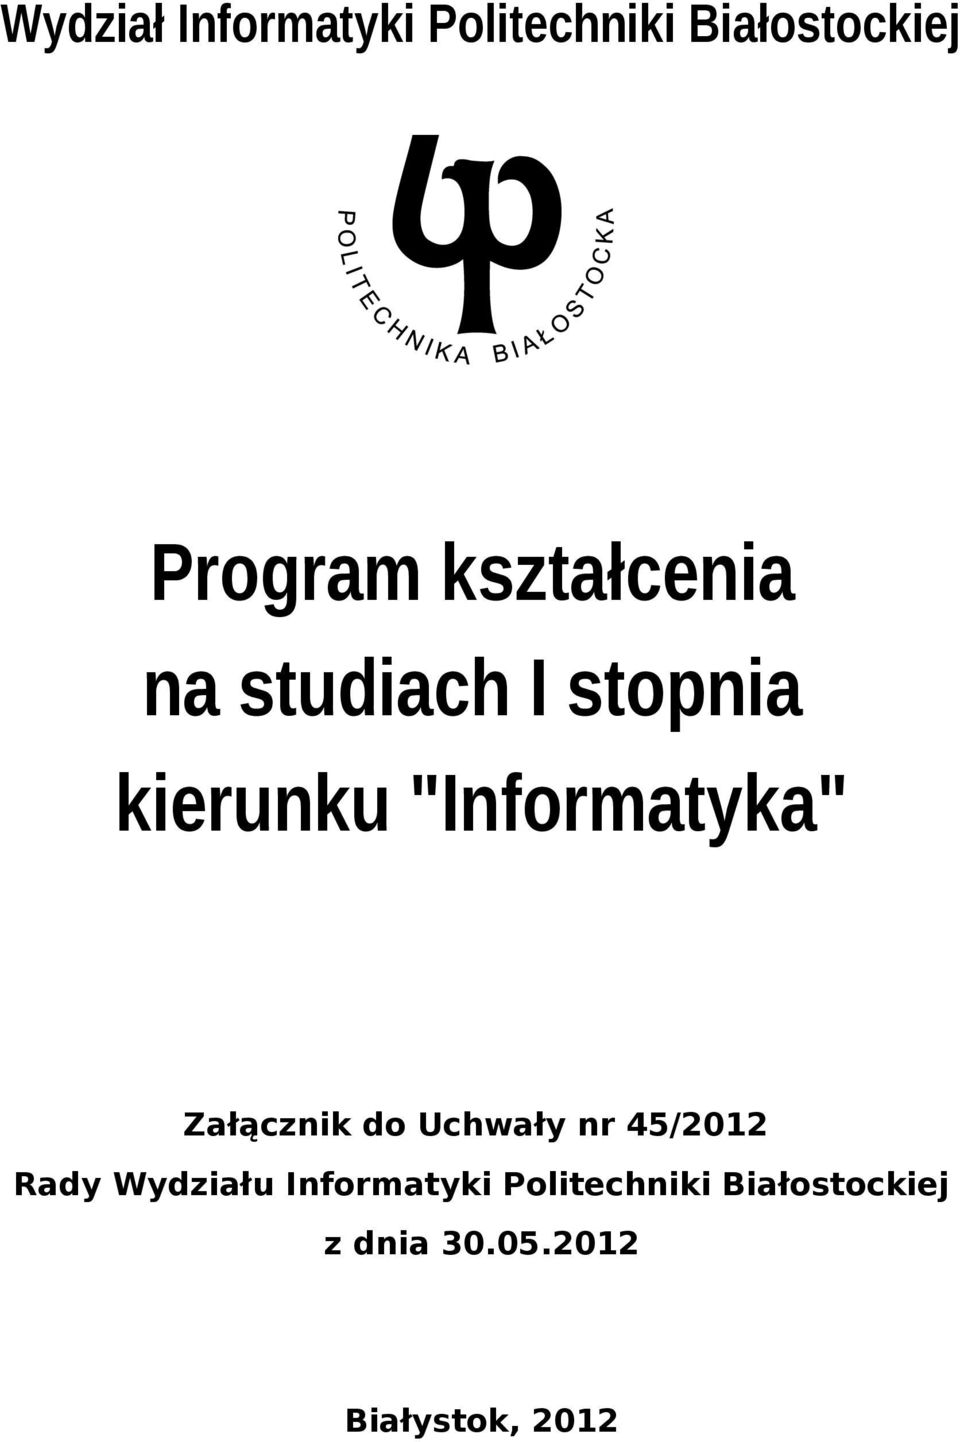 Załącznik do Uchwały nr 45/2012 Rady Wydziału Informatyki